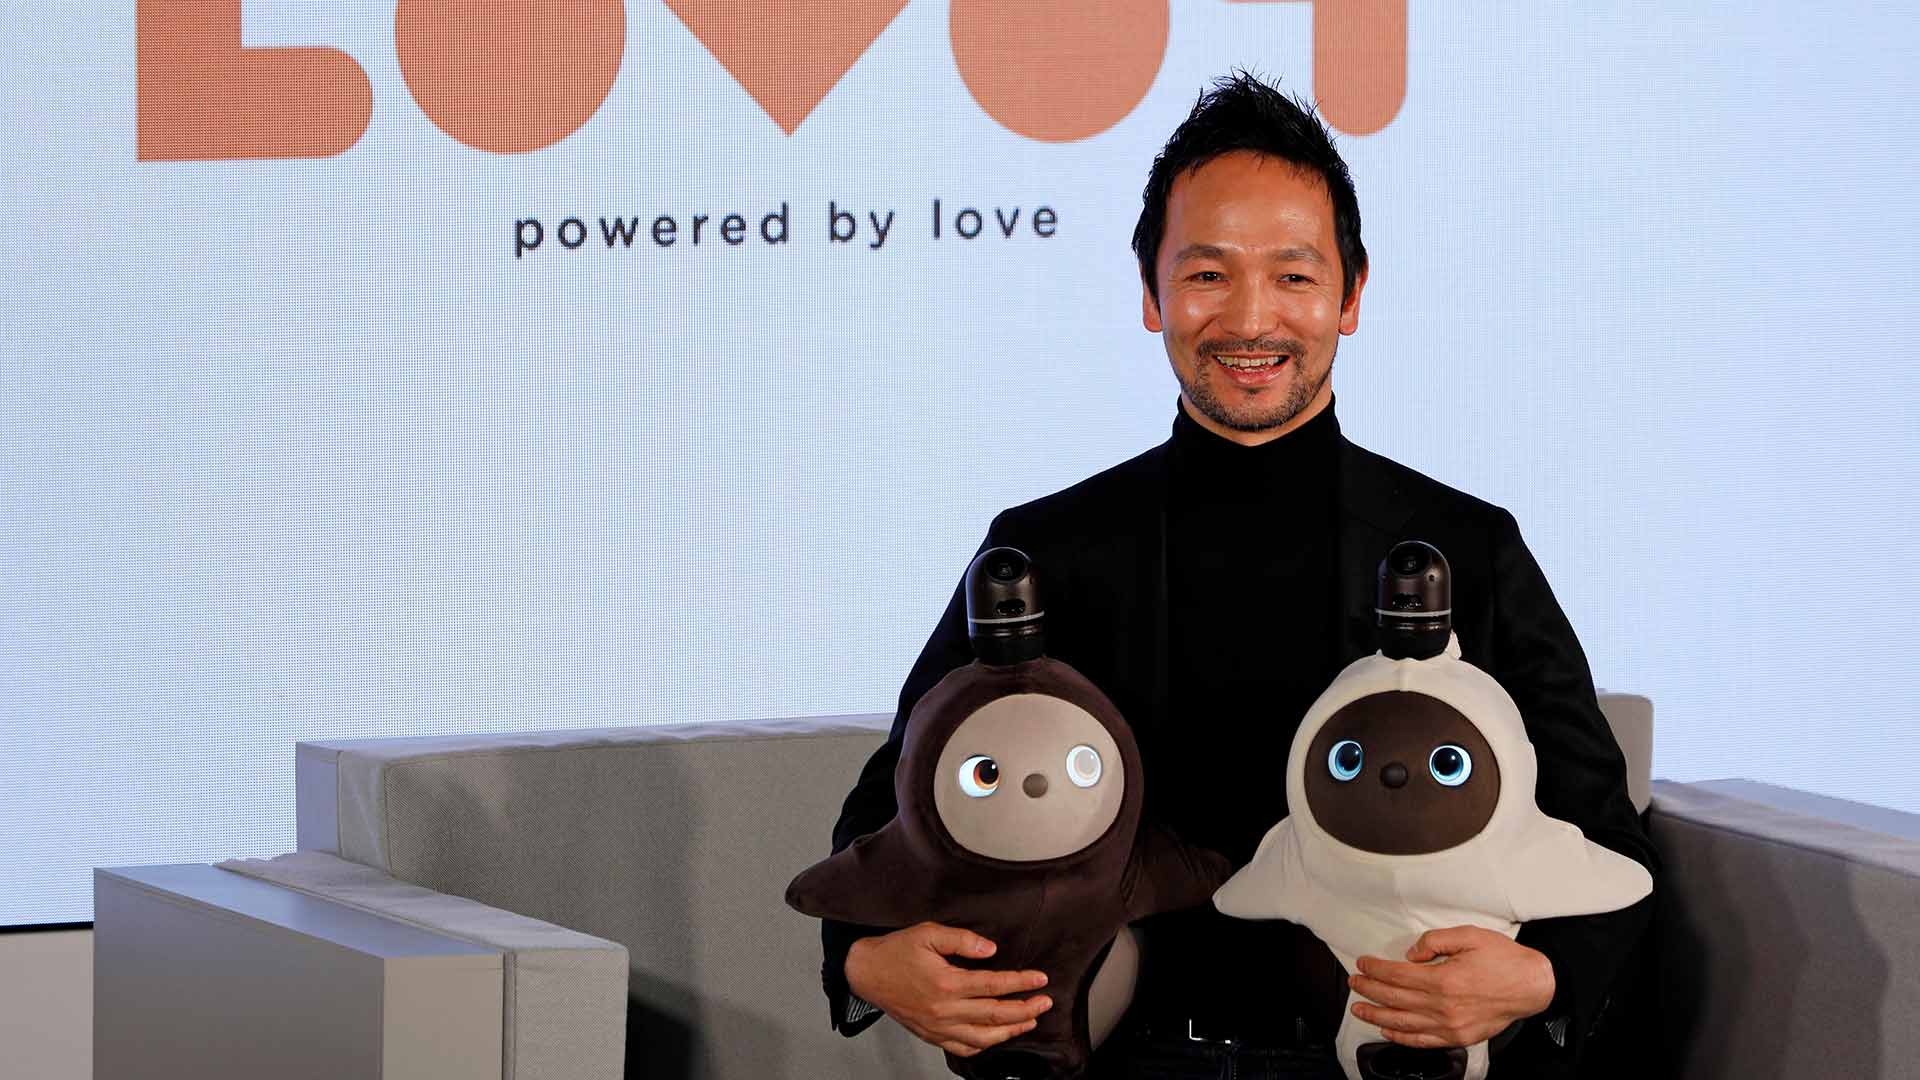 Así es Lovot, un robot nacido para amar y combatir la soledad